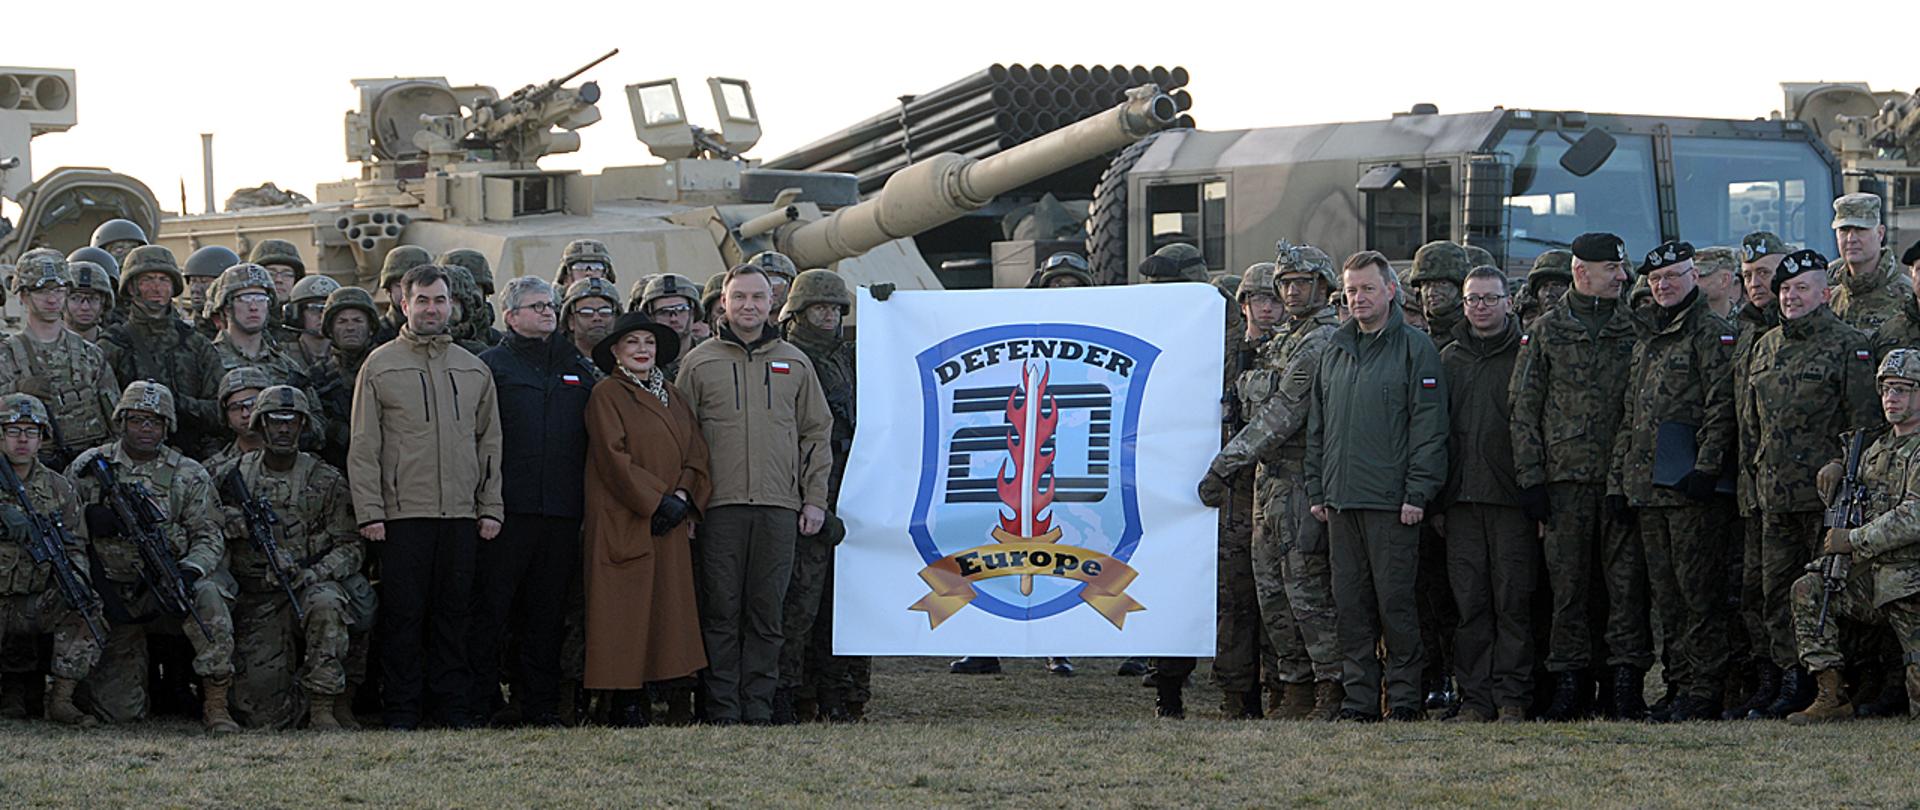 Zdjęcie grupowe prezydenta i ministra obrony narodowej z żołnierzami polskimi i amerykańskimi biorącymi udział w ćwiczeniu Defender Europe 20 w Drawsku Pomorskim. w tle sprzęt wojskowy.